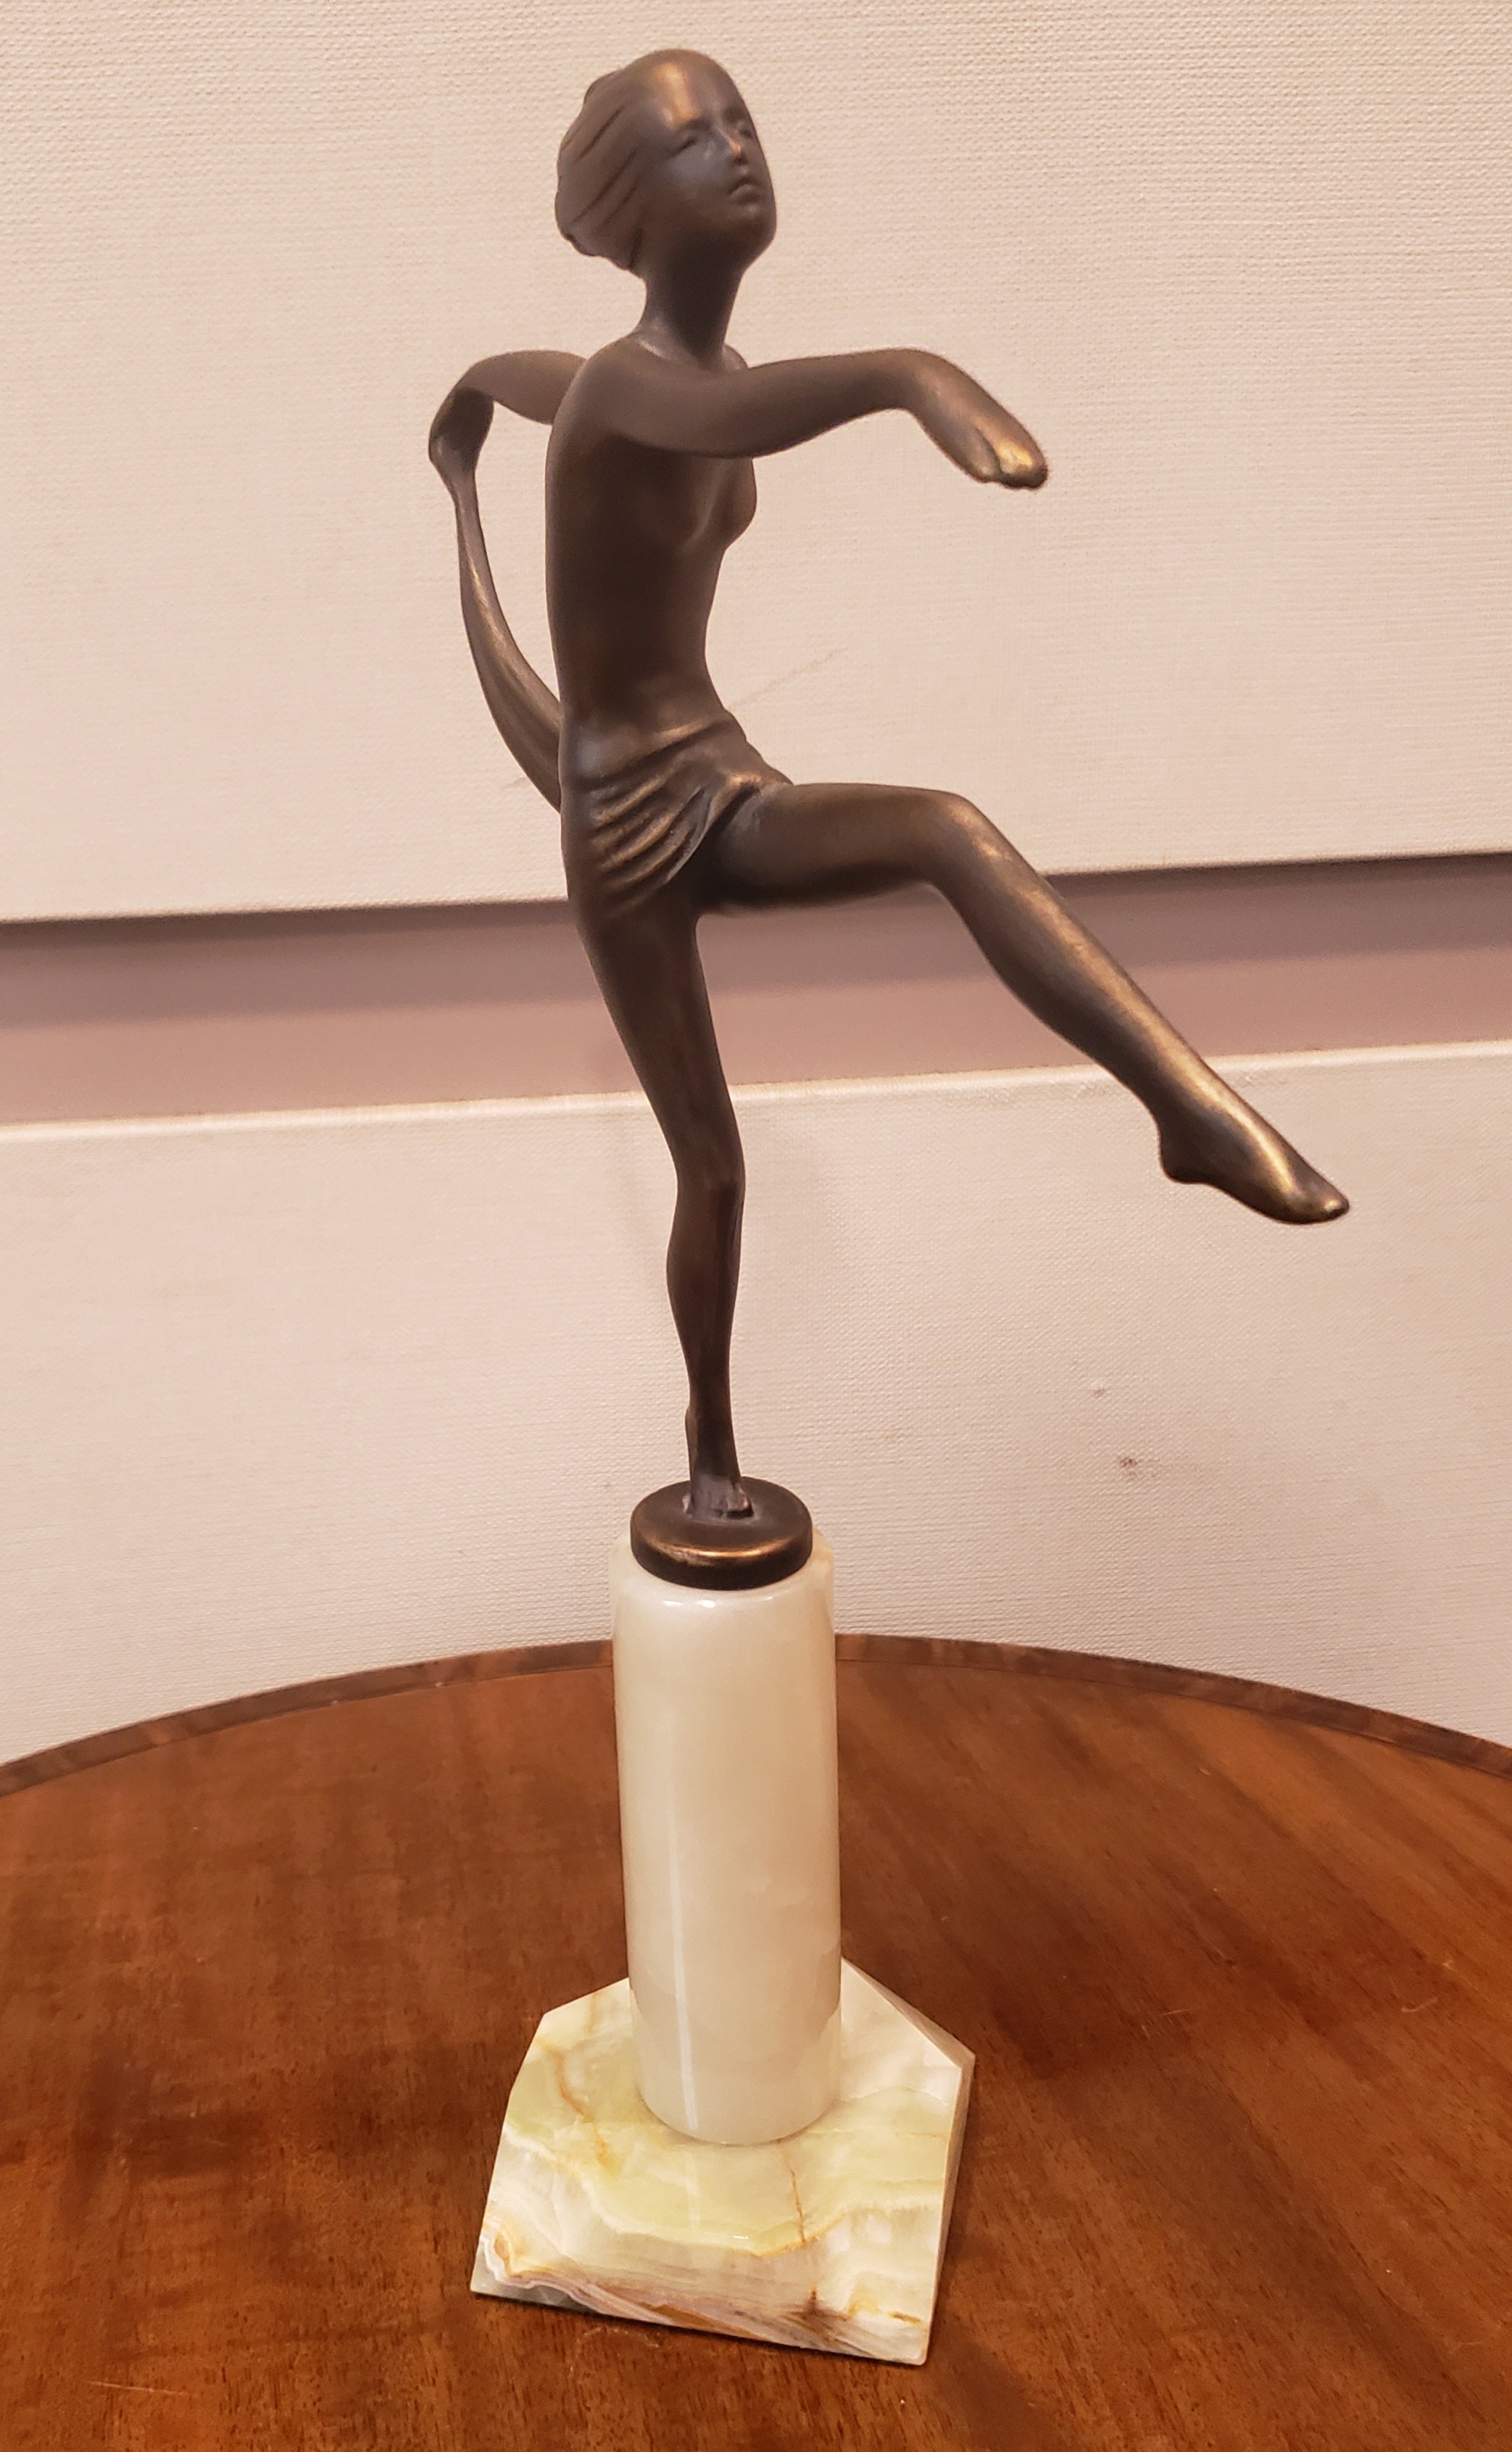 Une jolie figure en bronze Art déco du 20e siècle, peinte à froid, représentant une danseuse nue, les bras tendus dans une pose élégante, tenant l'ourlet de l'écharpe qui est drapée autour de sa taille, avec une jambe tendue devant elle. La